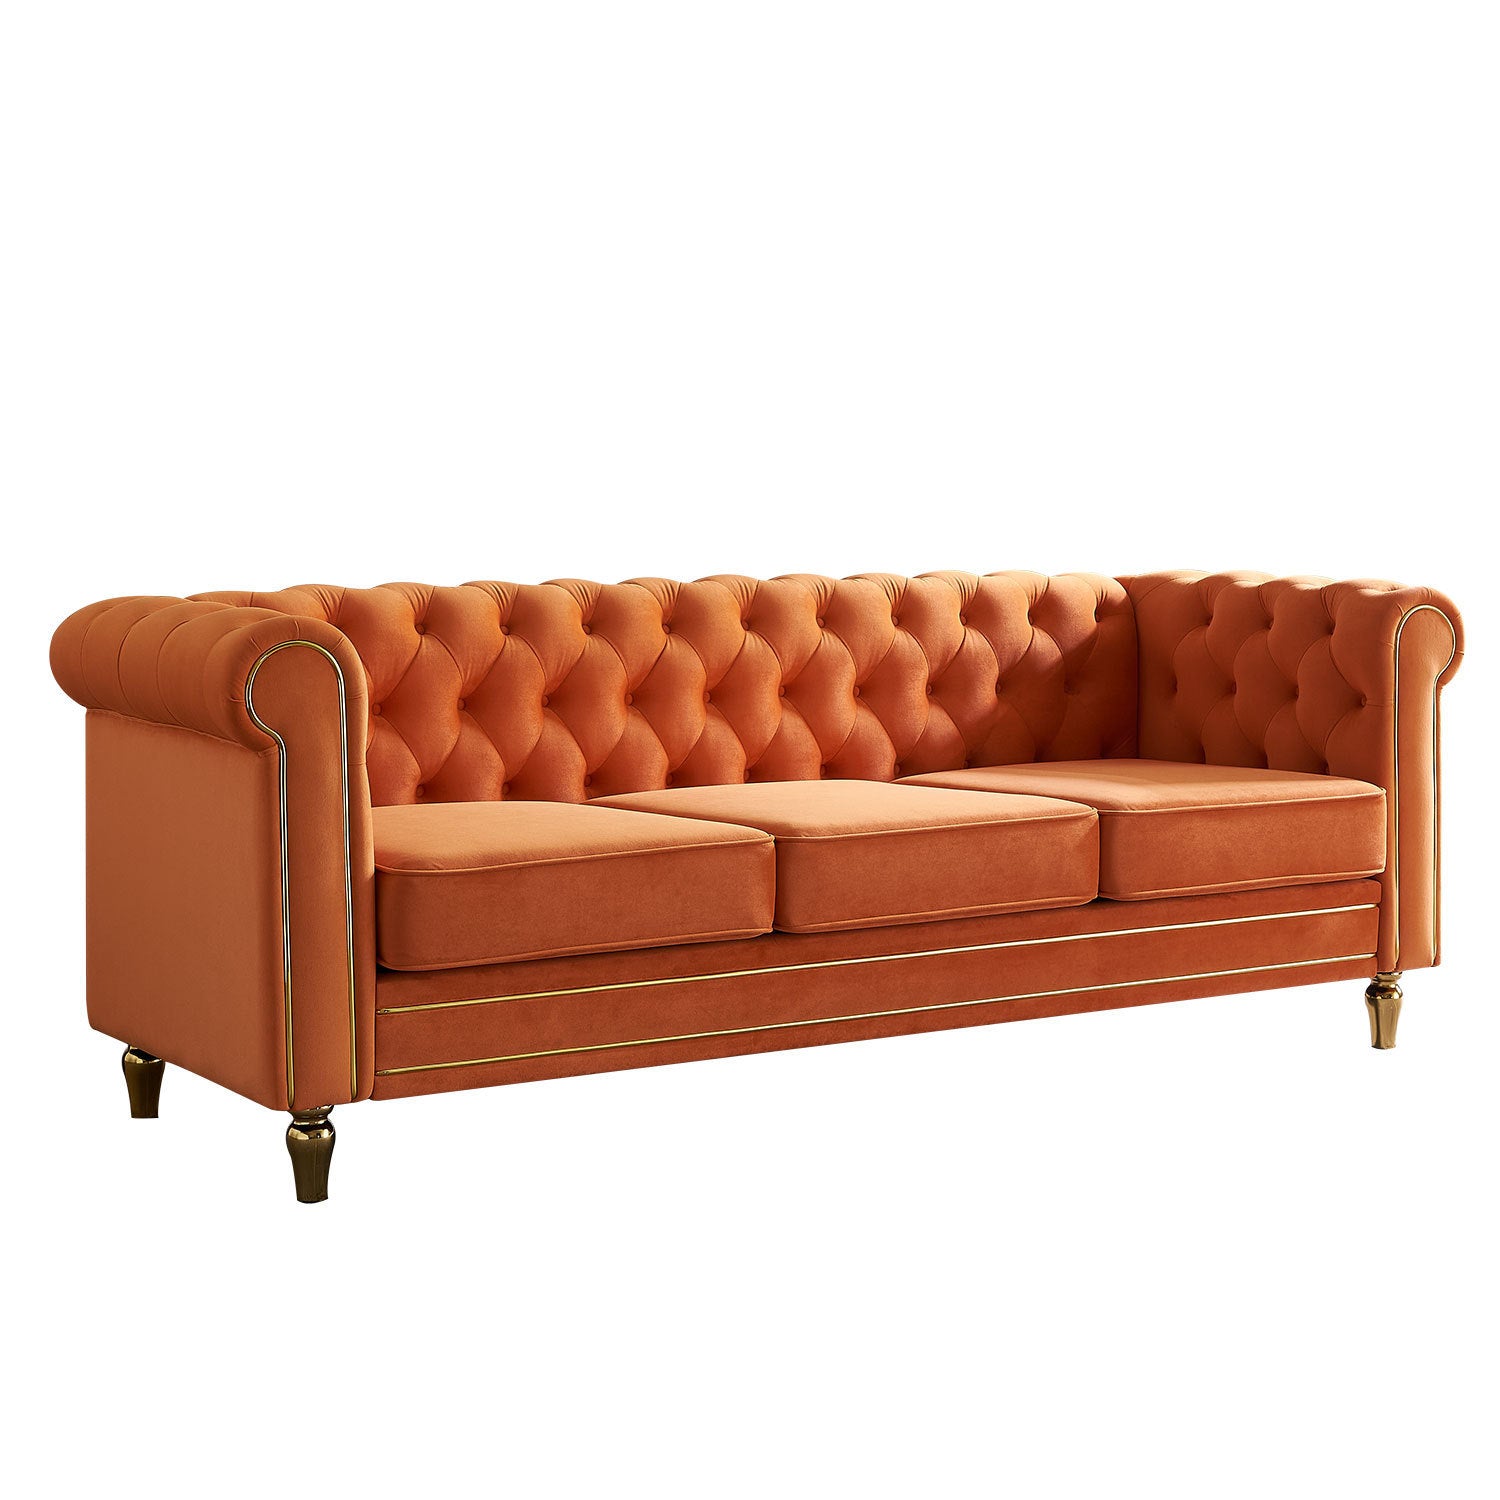 🆓🚛 84.65" Chesterfield Velvet Sofa for Living Room, Orange